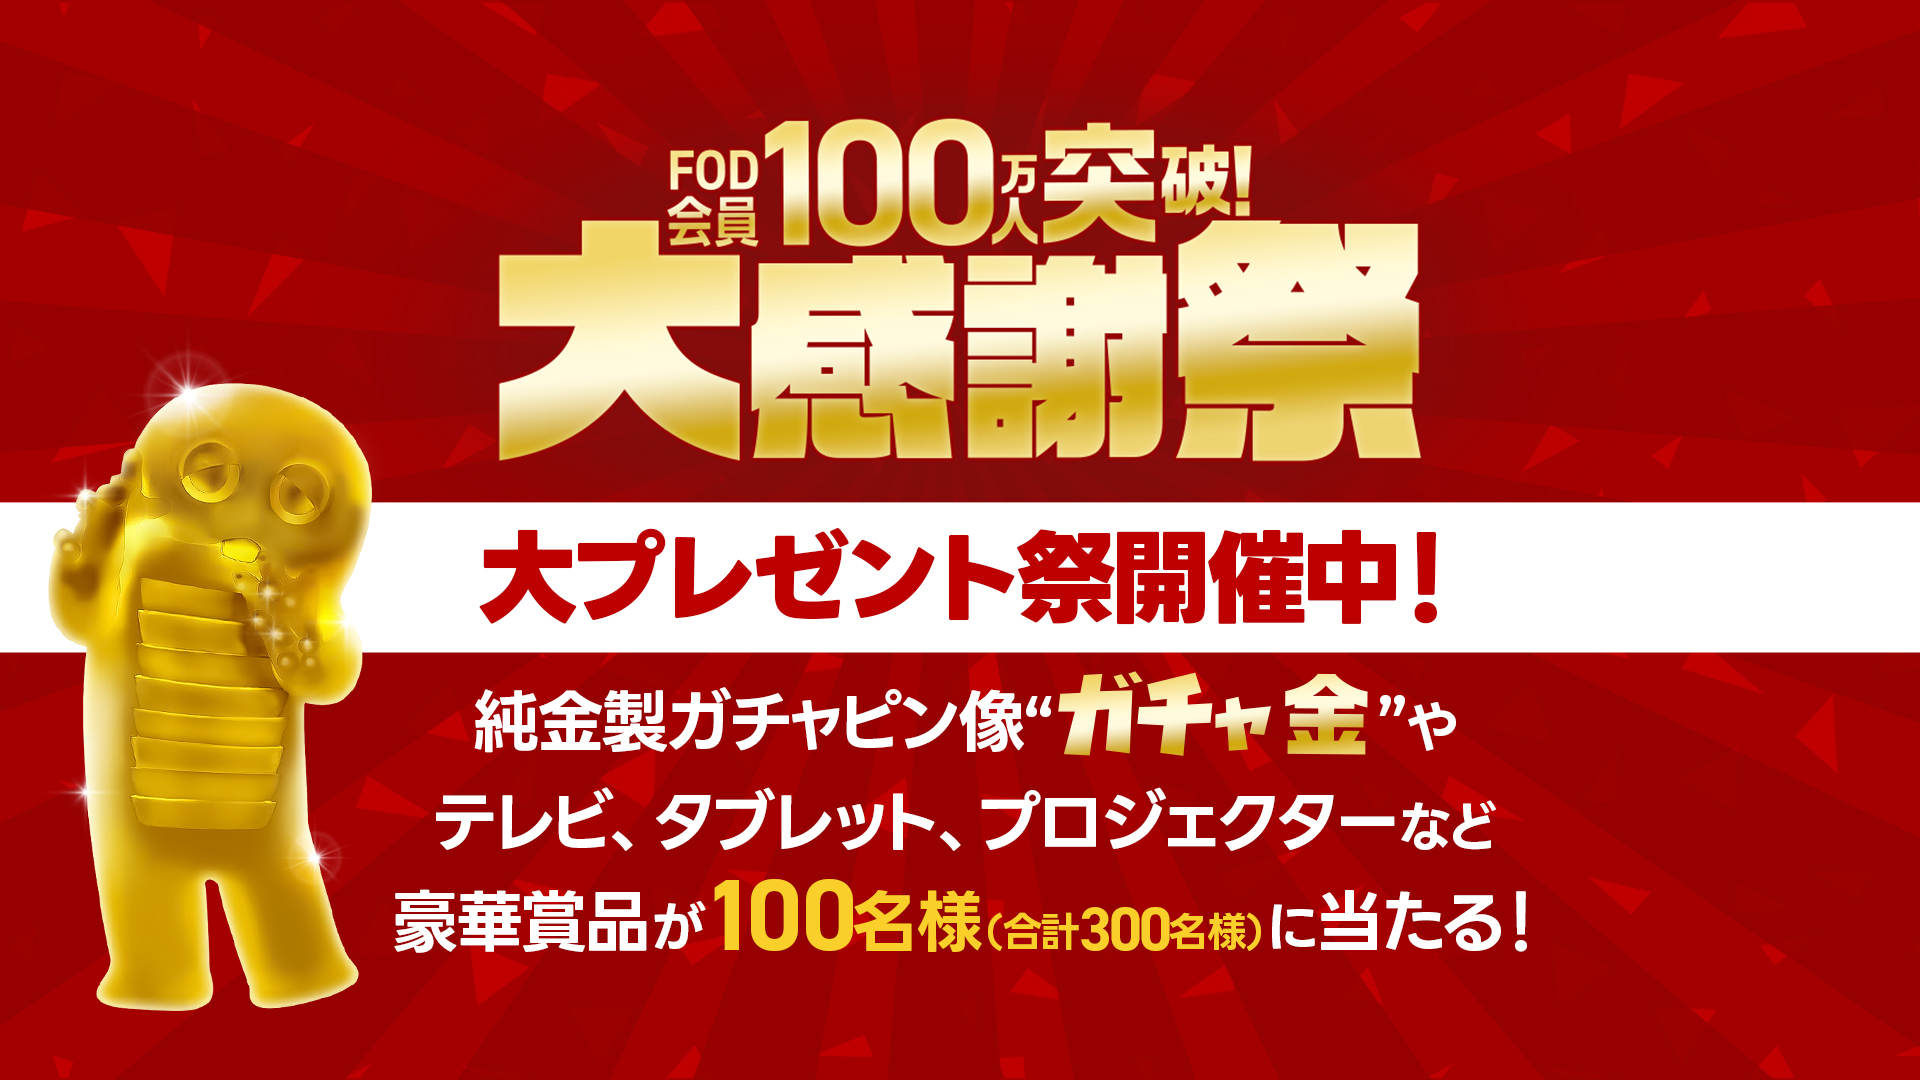 FODが会員100万人突破を記念した大感謝祭を開催！最初の1か月は200円